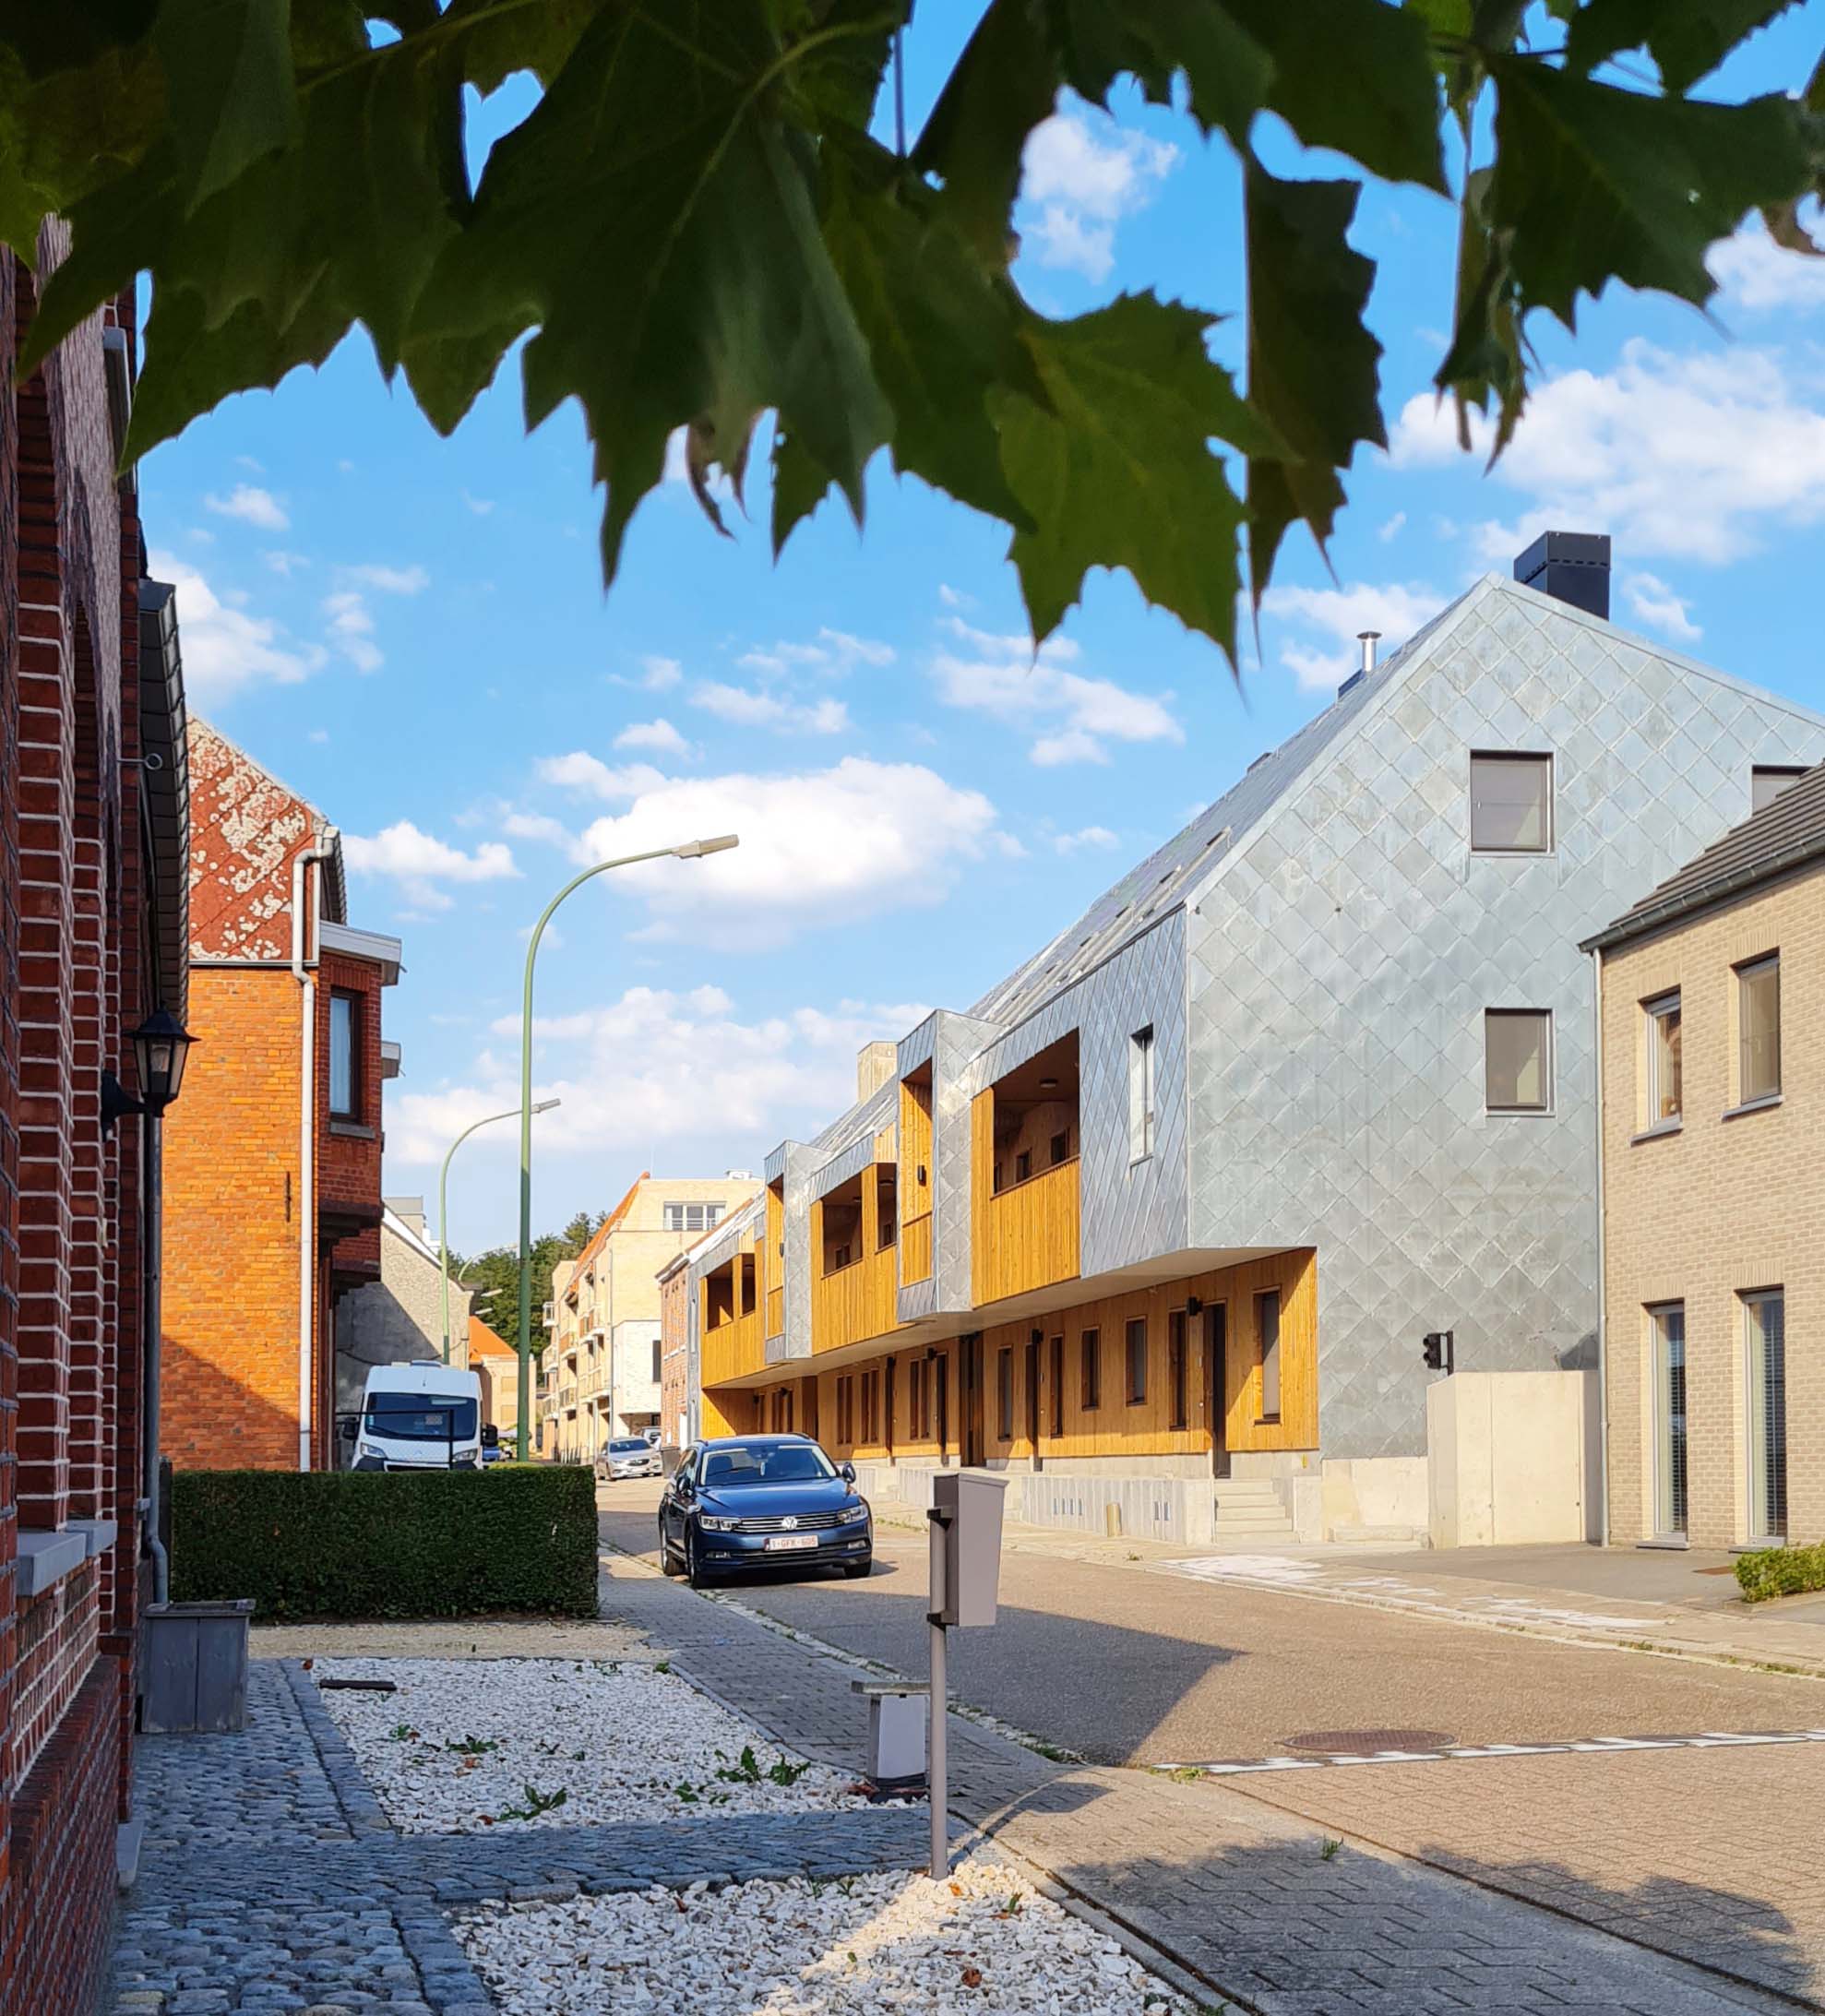 Trojka, collective housing, Scherpenheuvel-Zichem